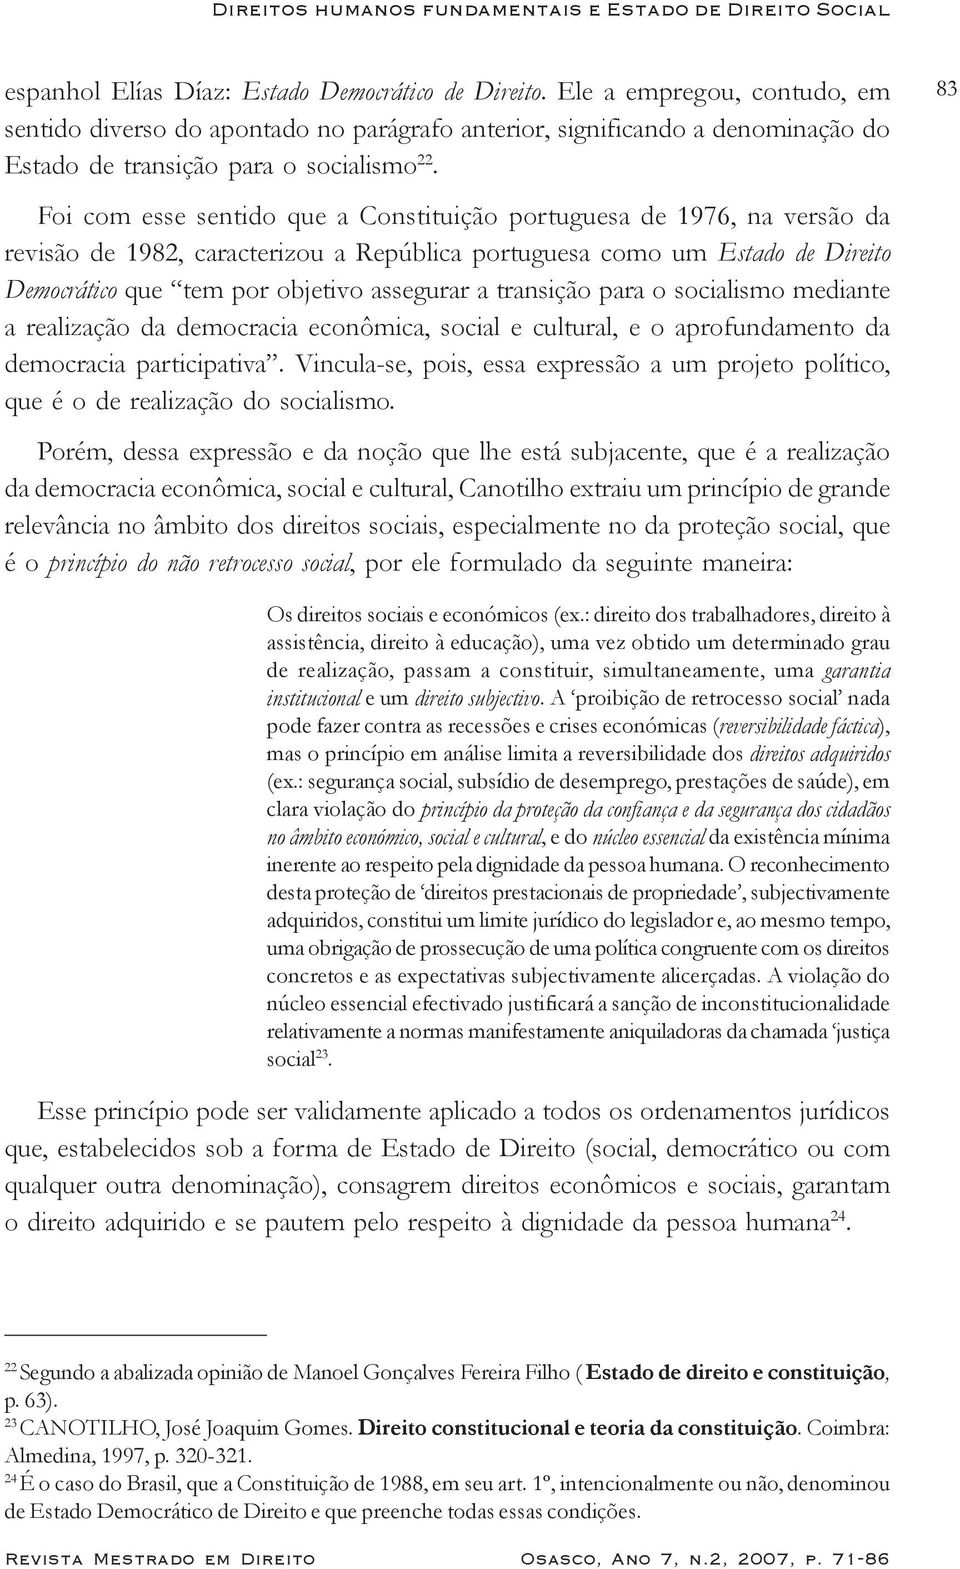 Foi com esse sentido que a Constituição portuguesa de 1976, na versão da revisão de 1982, caracterizou a República portuguesa como um Estado de Direito Democrático que tem por objetivo assegurar a